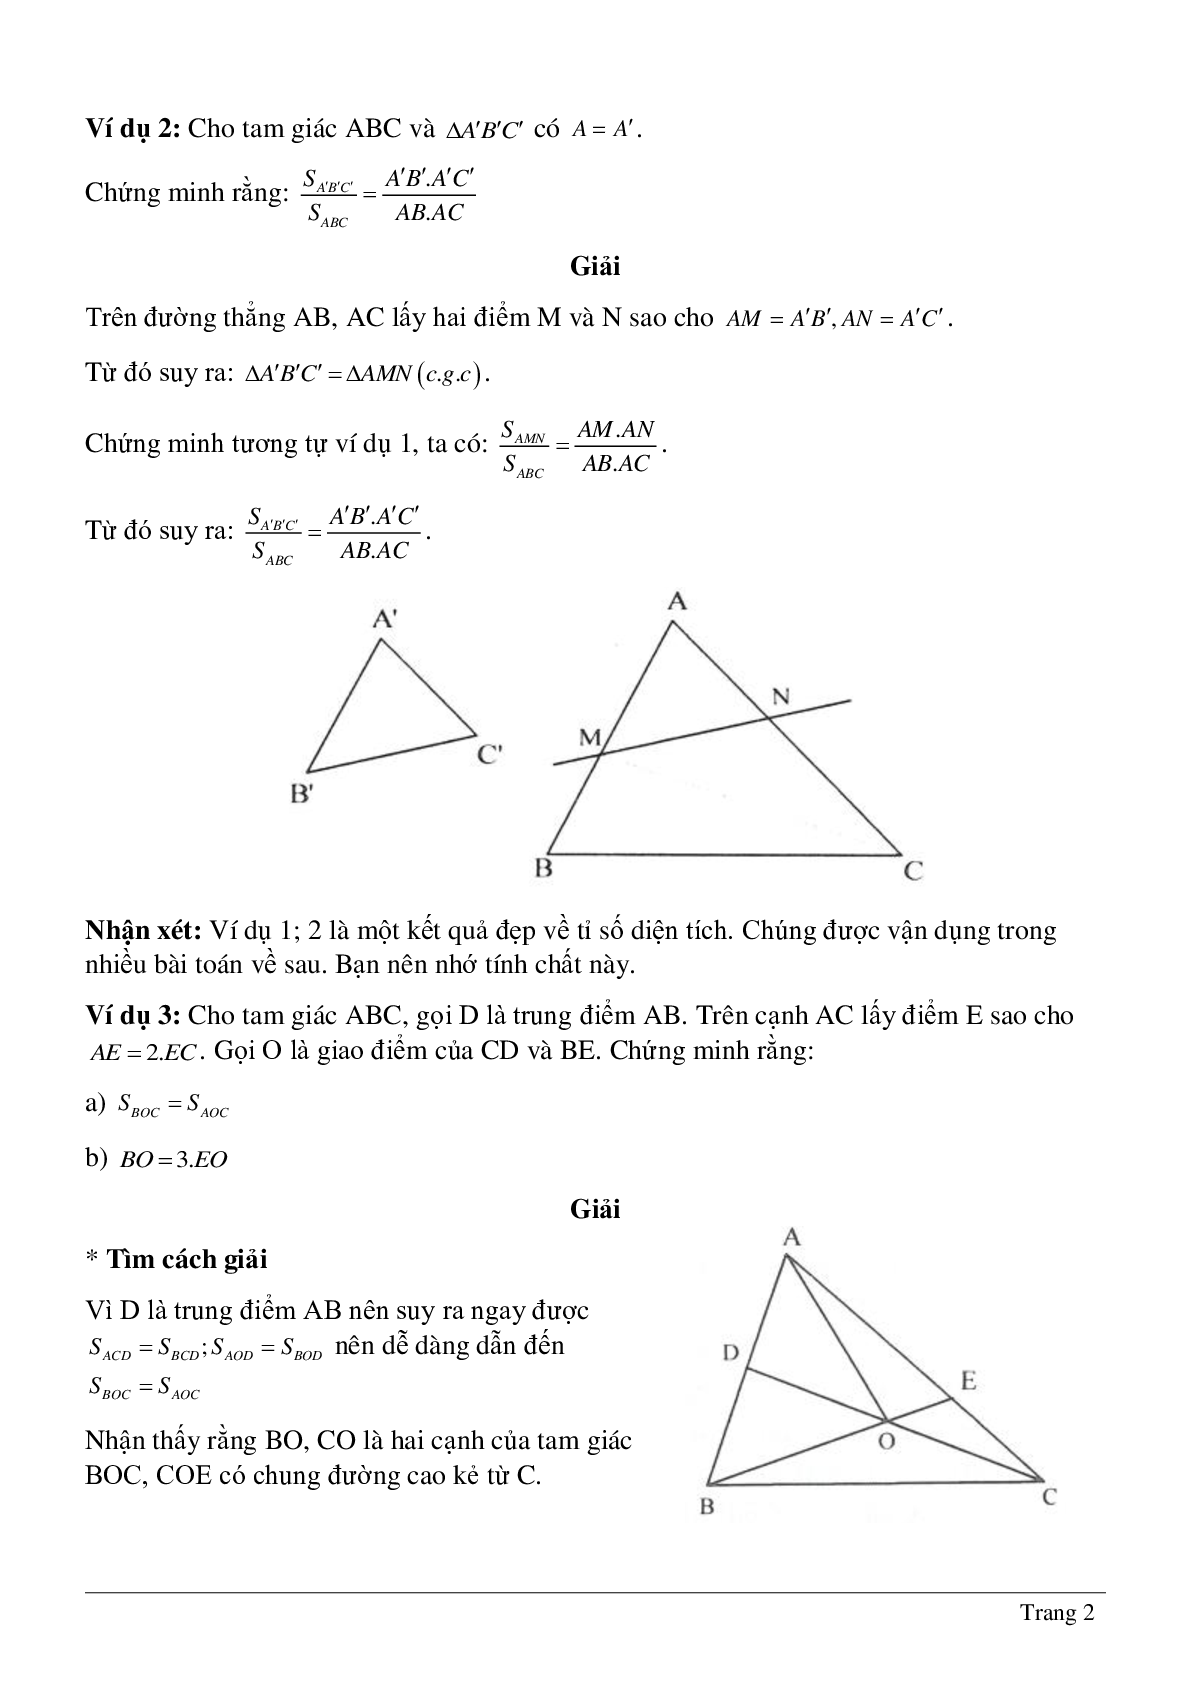 Phương pháp diện tích - Hình học toán 8 (trang 2)